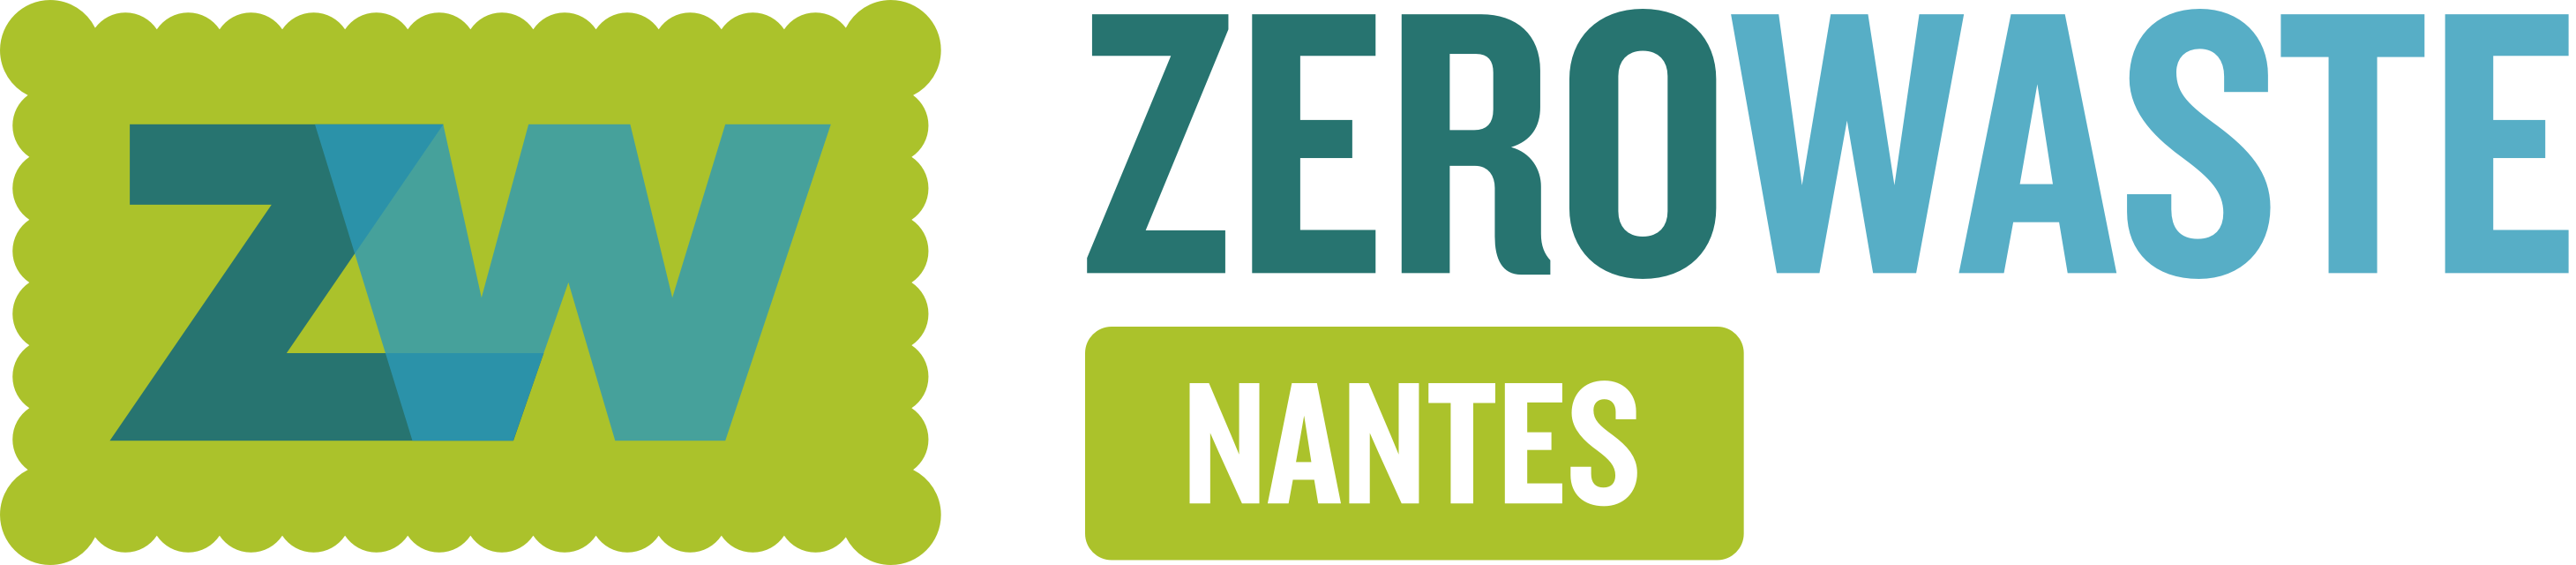 Zero Waste Nantes